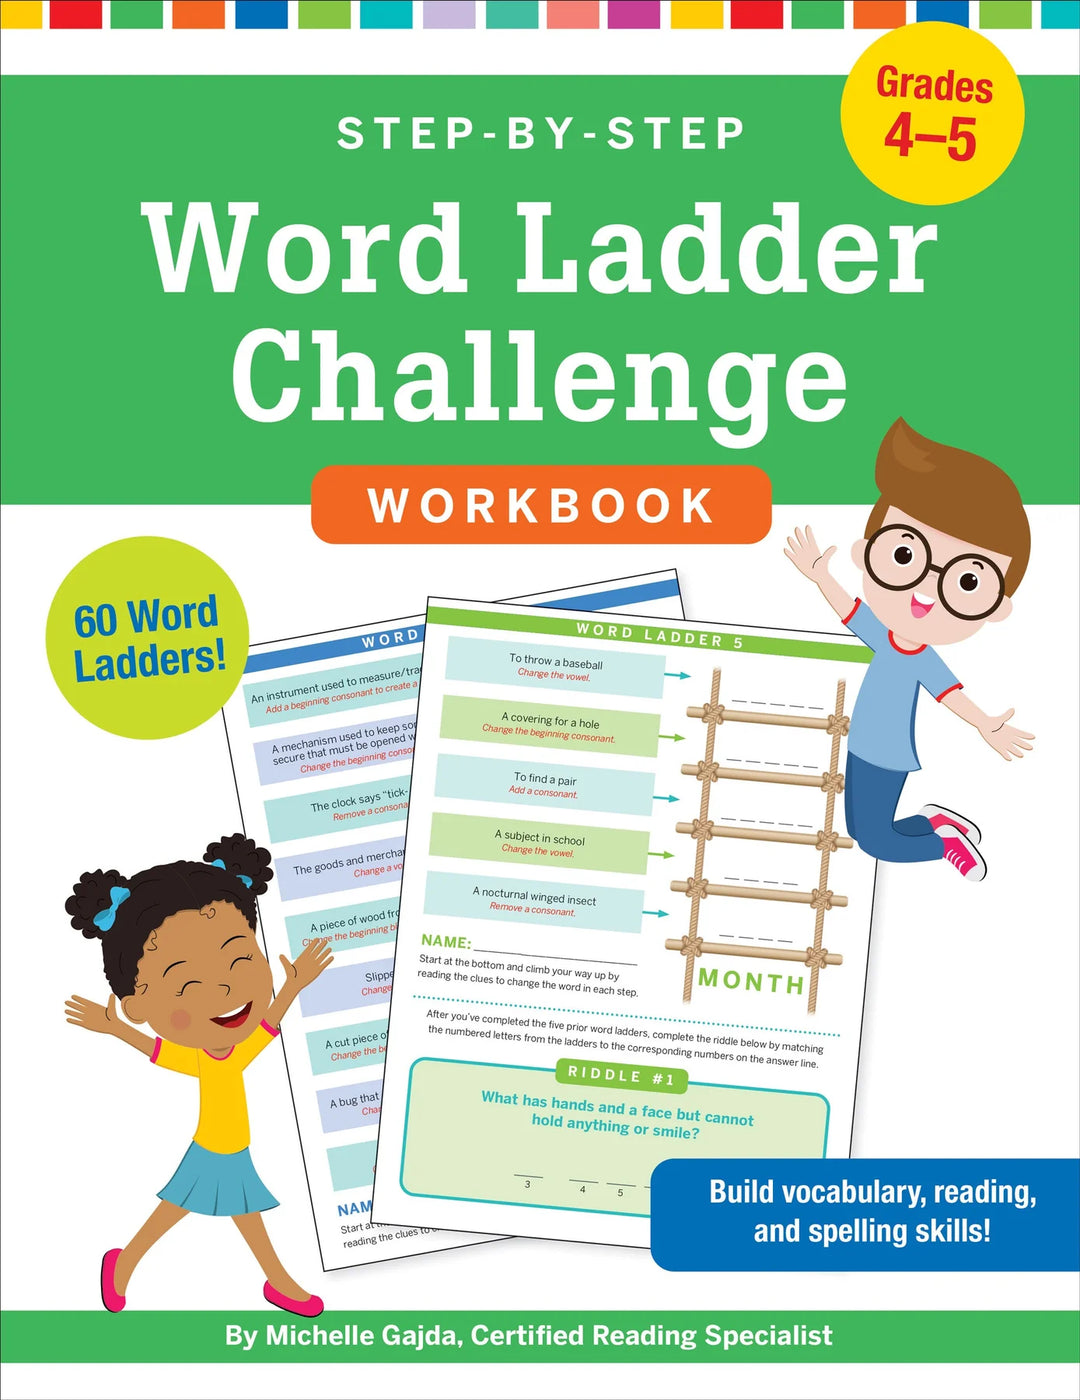 Word Ladder Challenge Workbook Grades 4-5